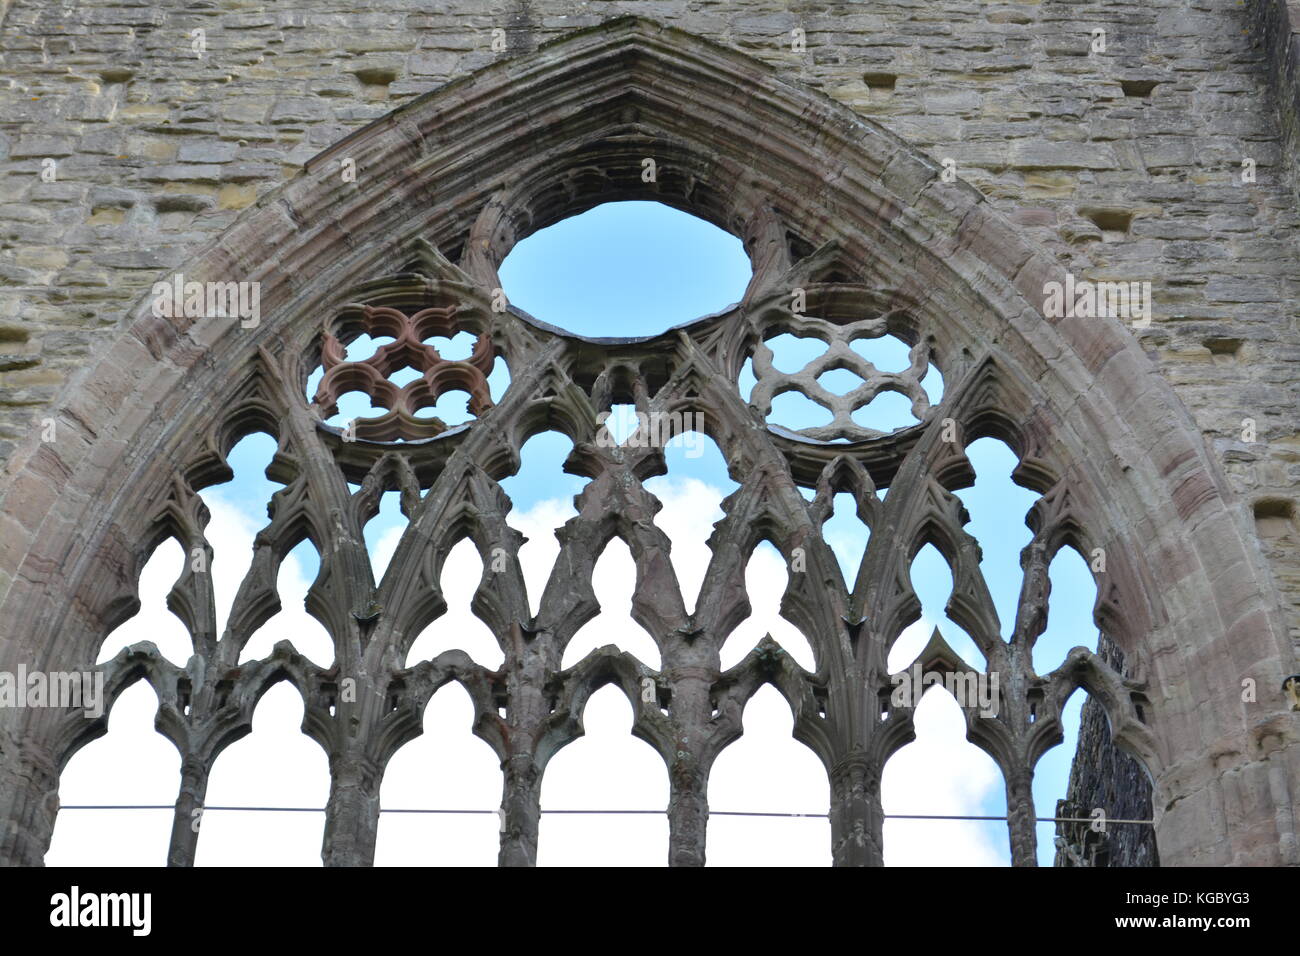 La ABADÍA DE TINTERN monmouthshire uk wales re monasterios disolución detalle arquitectónico ruinas antiguas Foto de stock